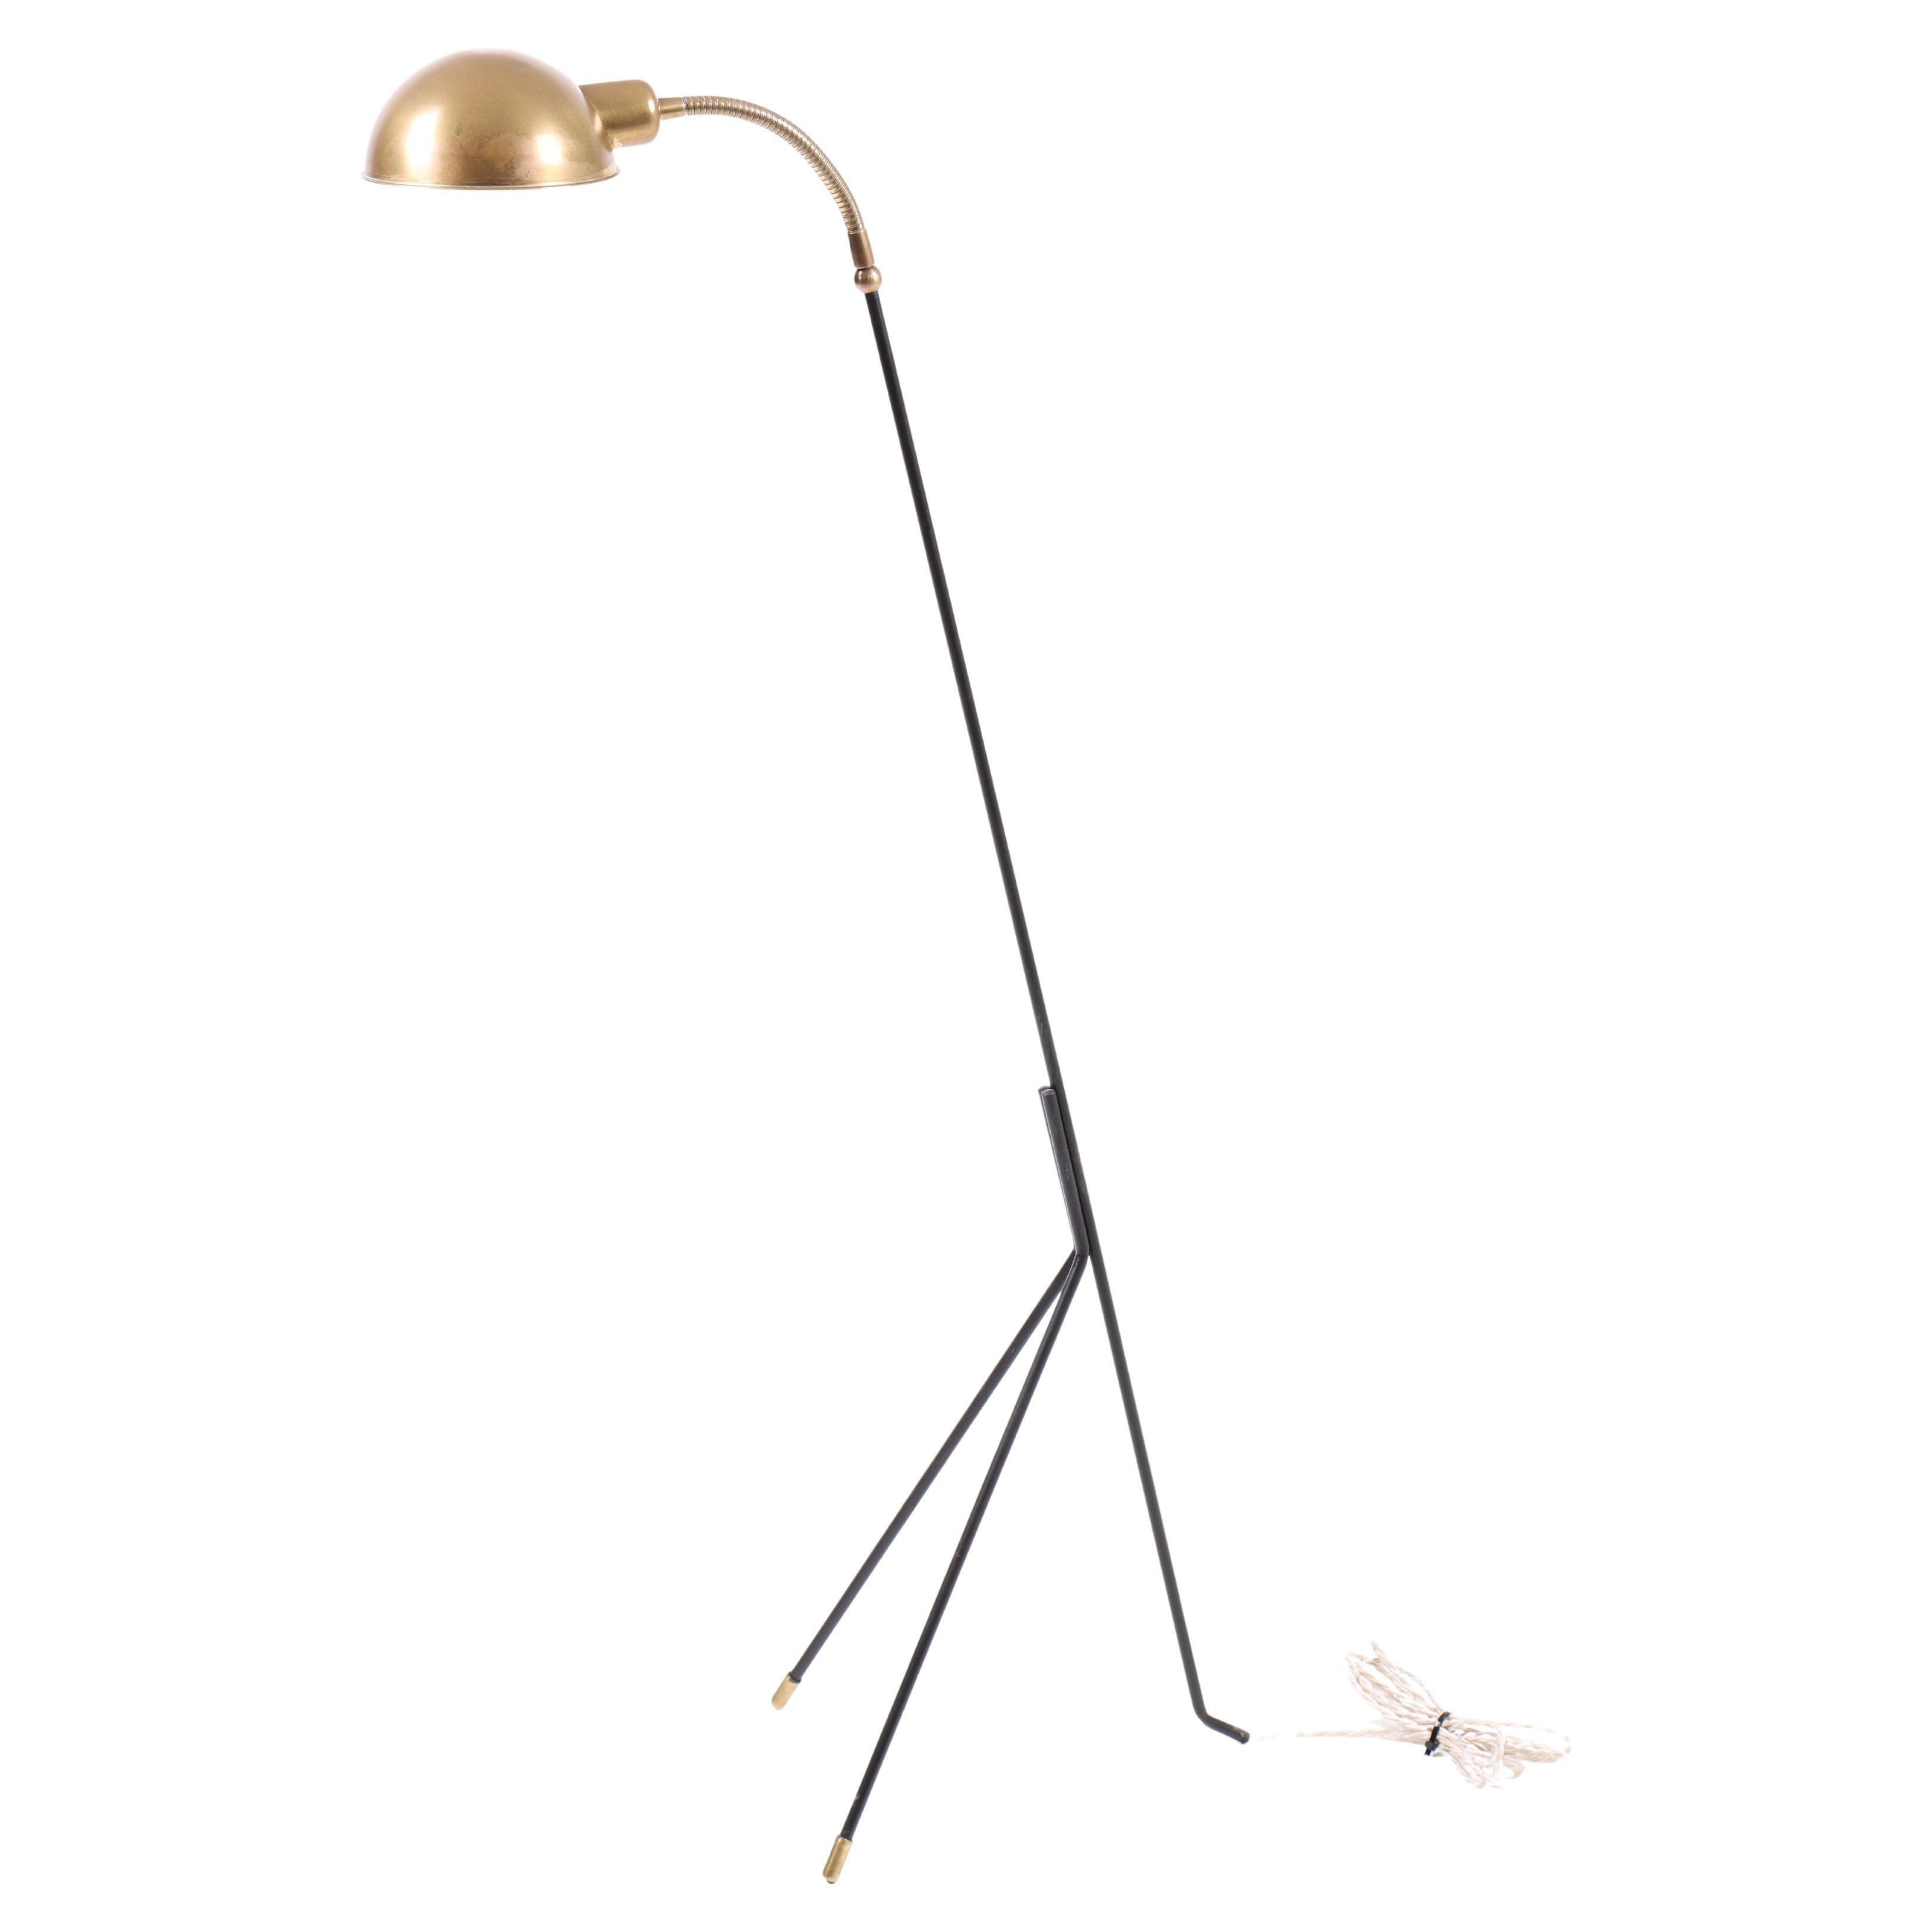 Elegant lampadaire danois du milieu du siècle par I Holm Sorensen, Design/One, années 1950